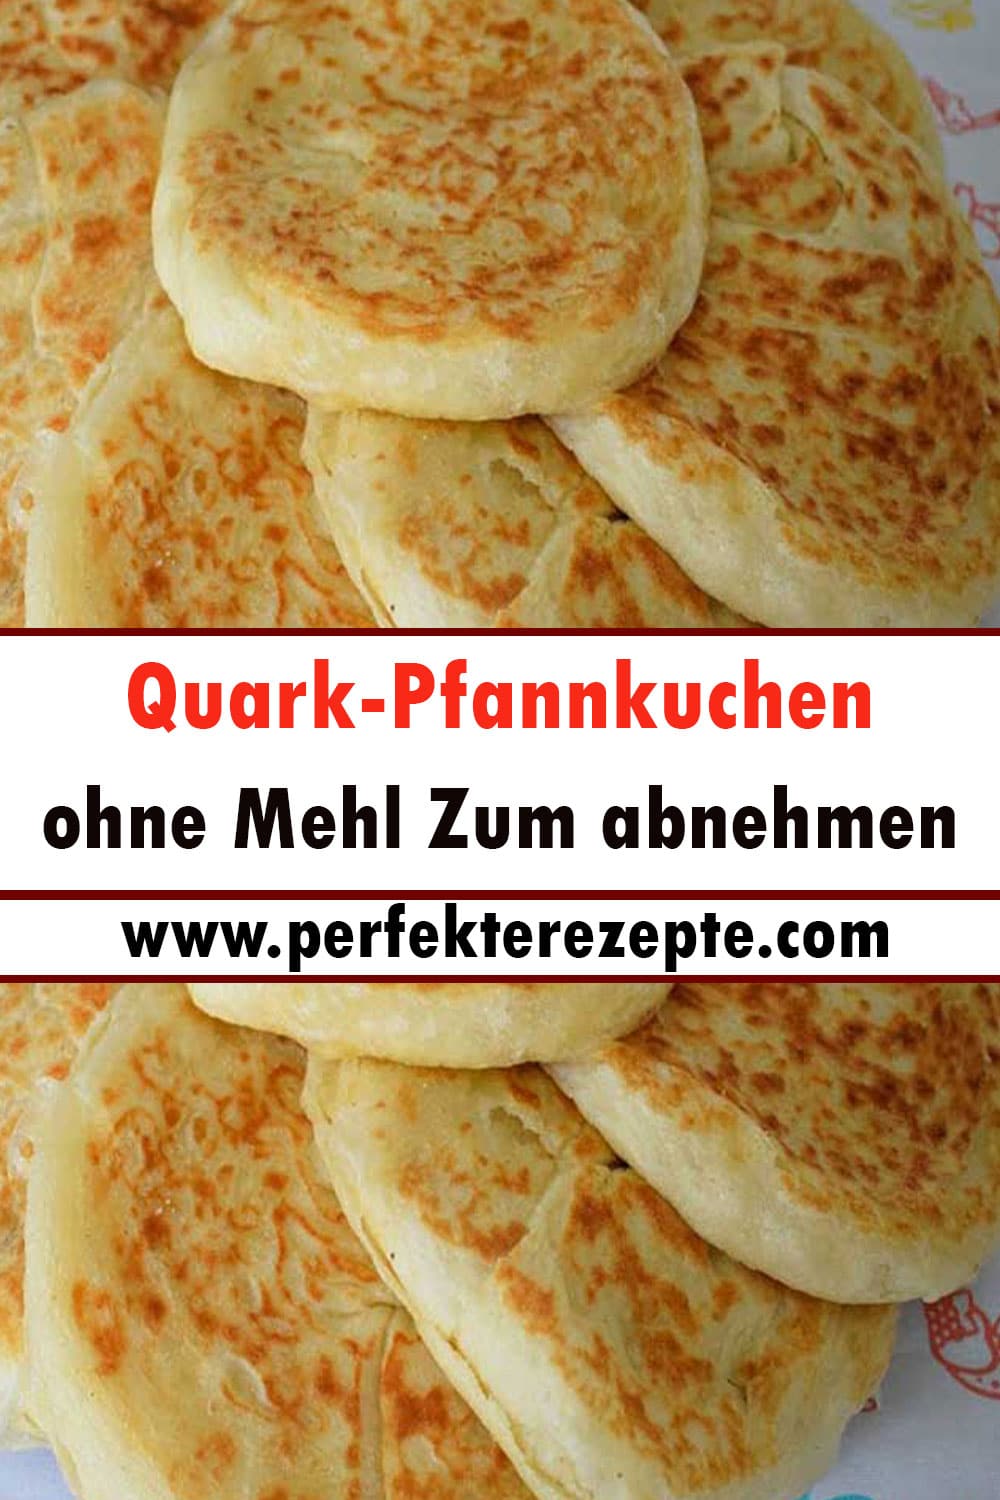 Quark-Pfannkuchen Rezept ohne Mehl Zum abnehmen